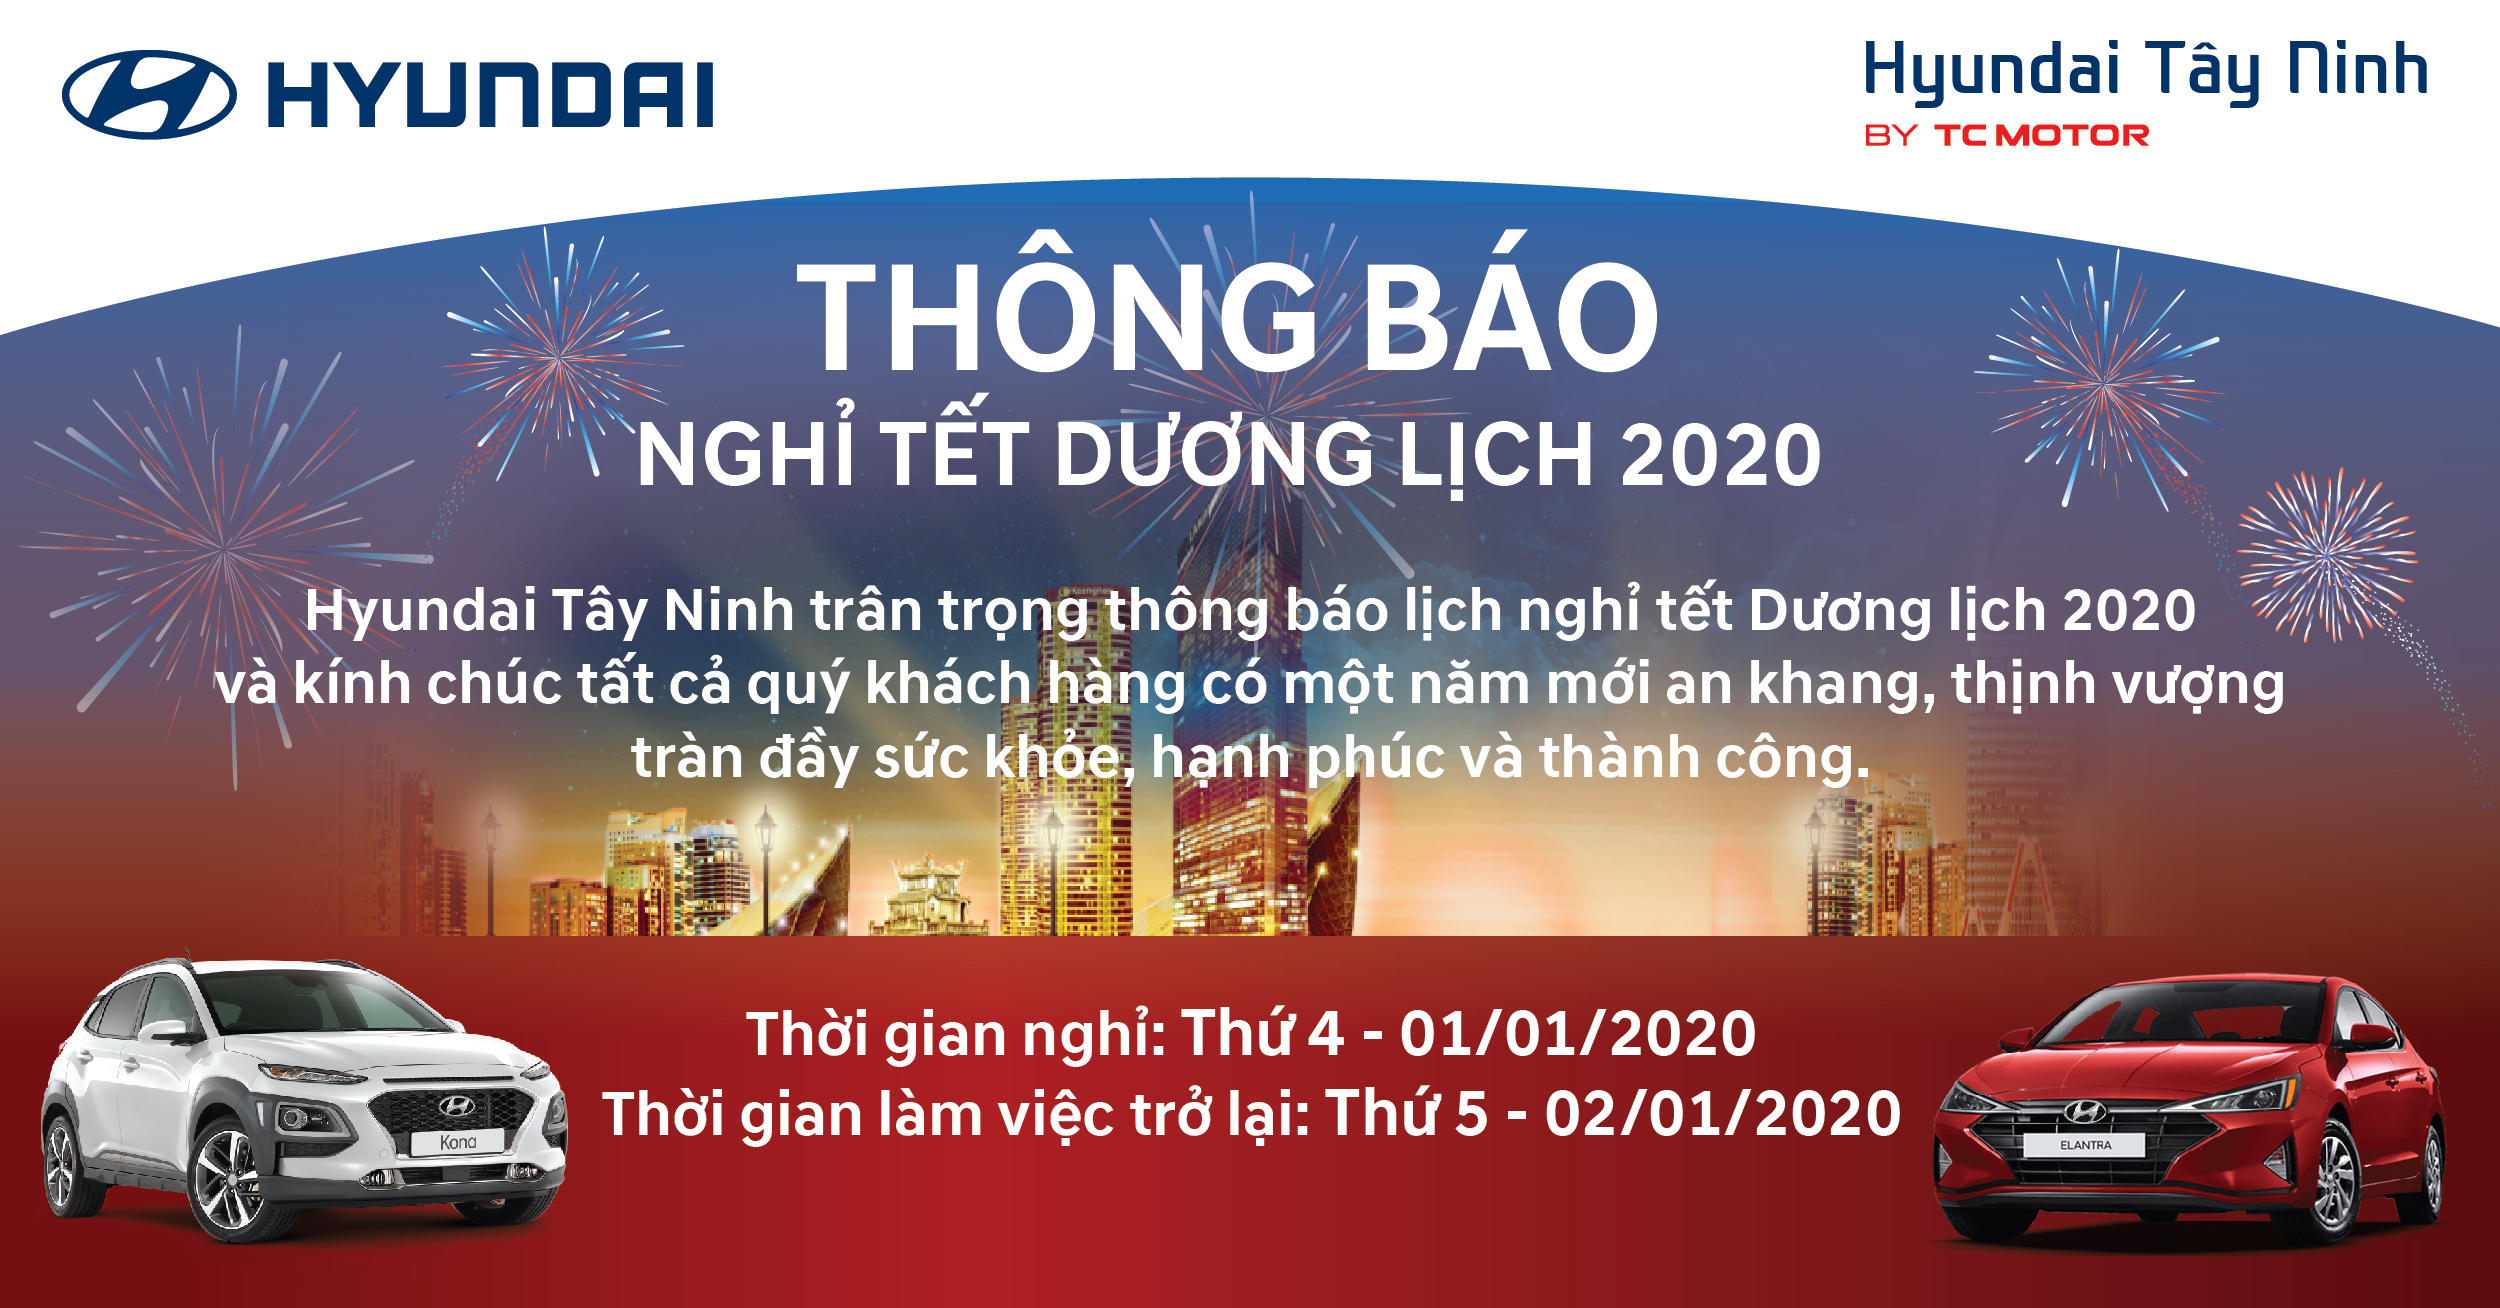 Hyundai Tây Ninh trân trọng thông báo lịch nghỉ tết Dương lịch 2020 ️